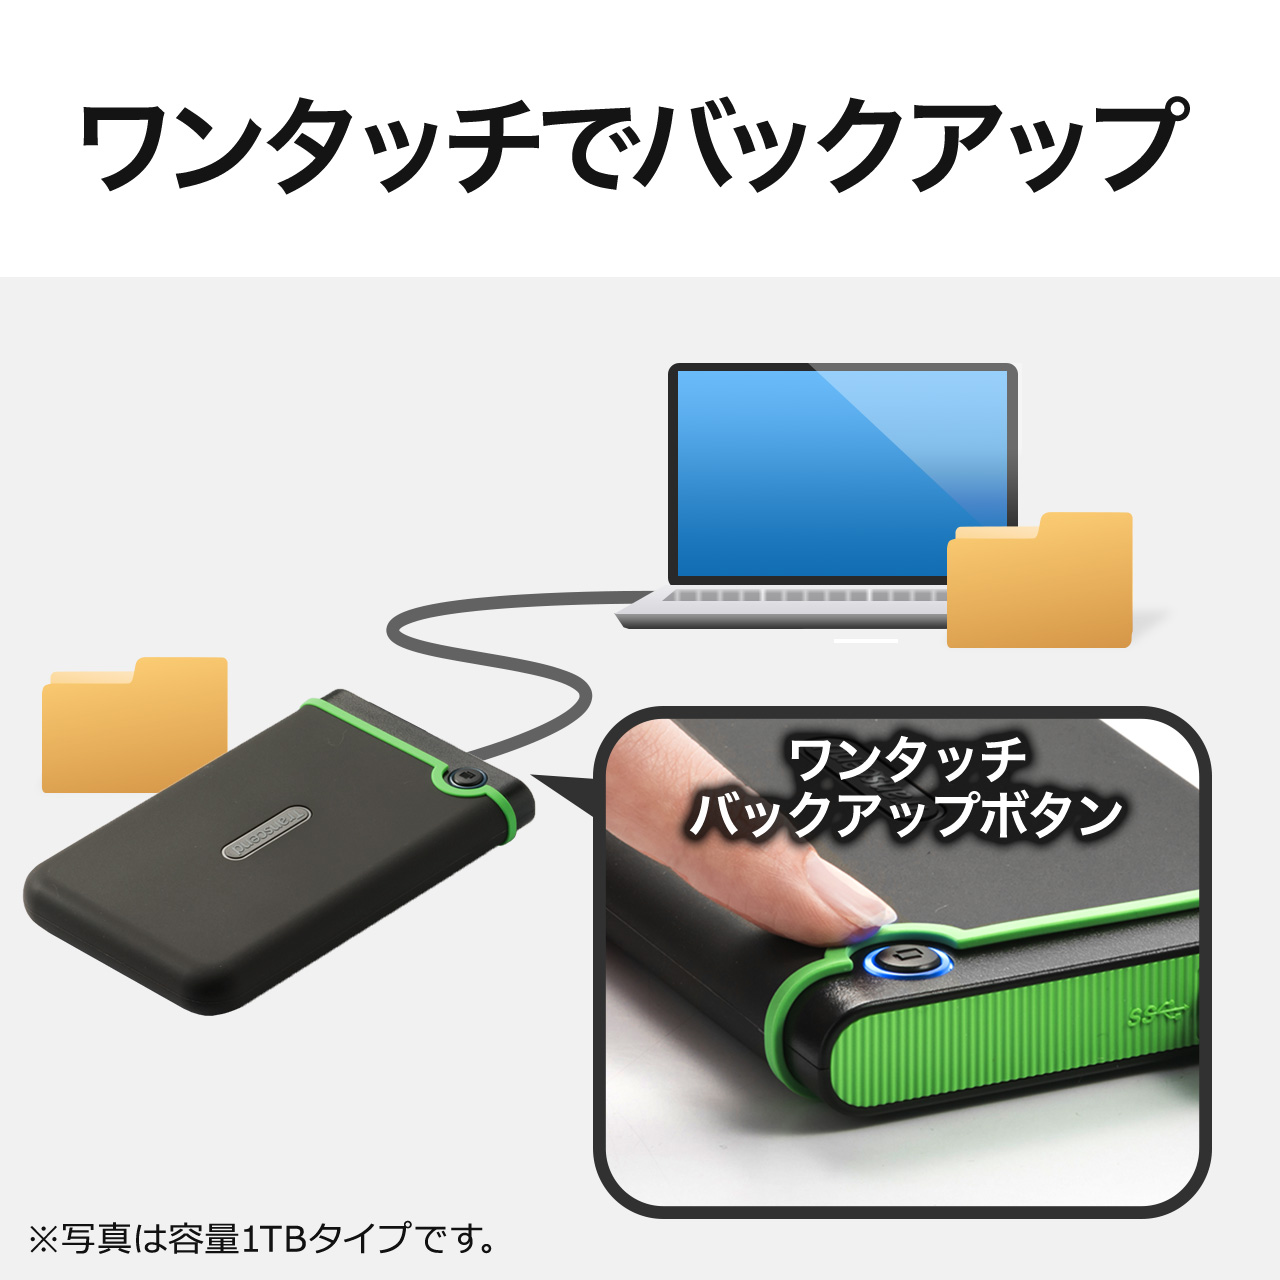 【人気商品】Transcend ポータブルHDD 4TB 耐衝撃 USB3.1